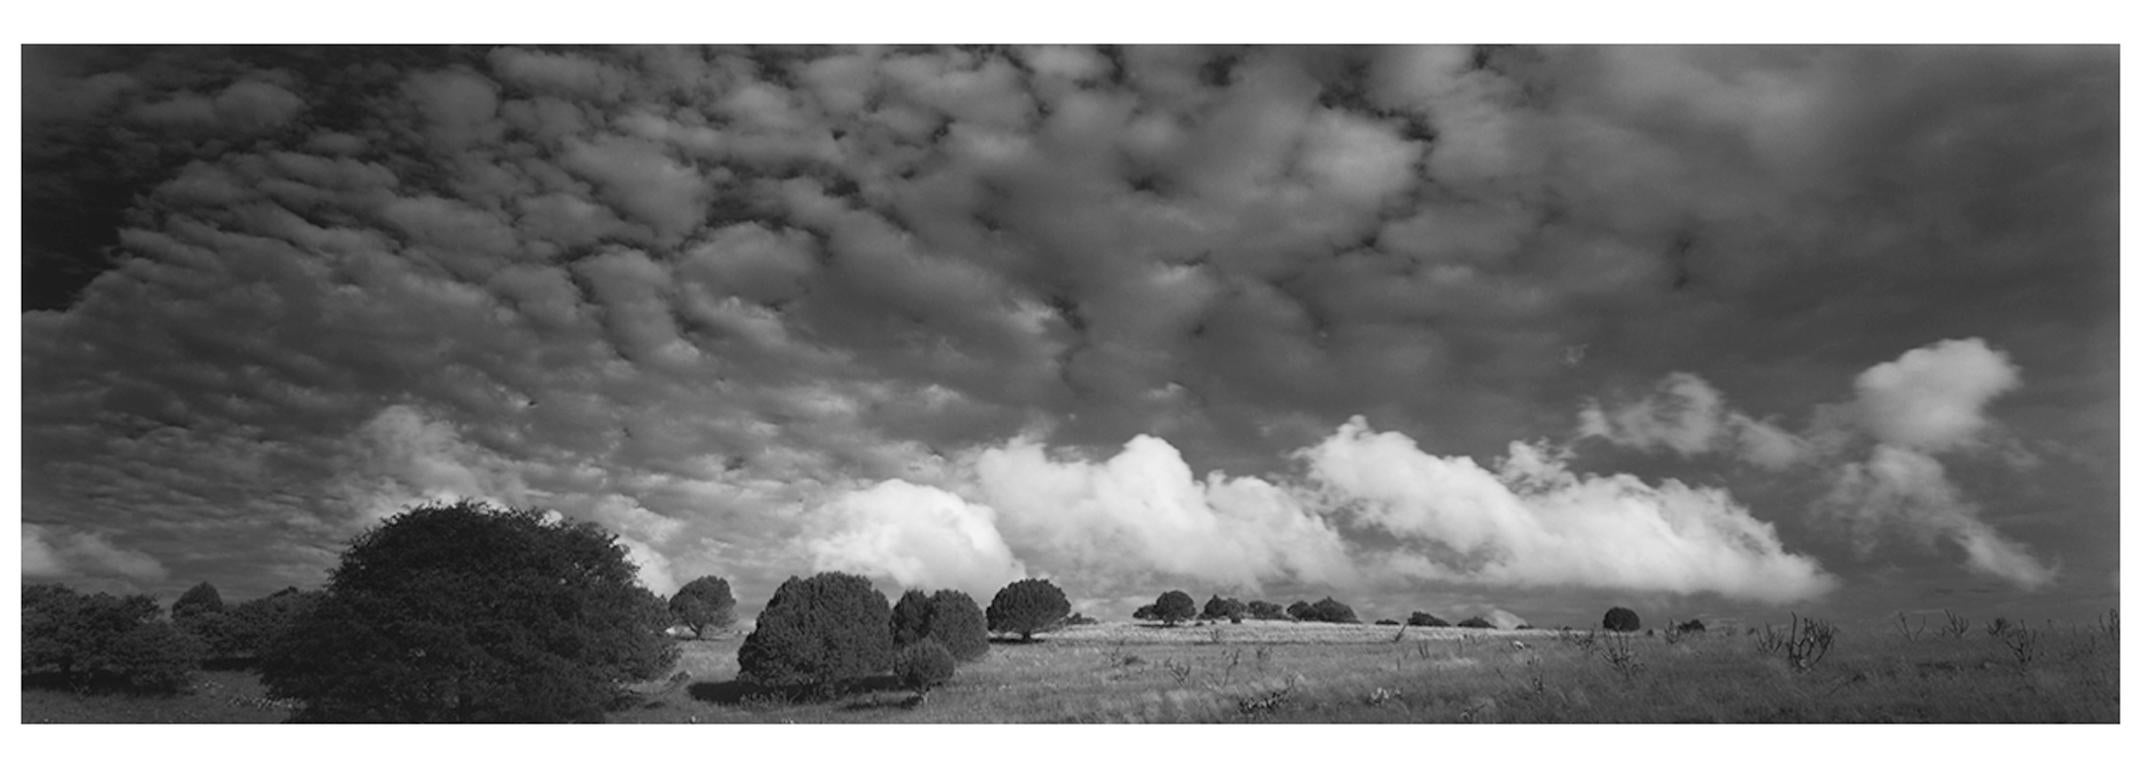 David H. Gibson Black and White Photograph – Wolkenmarsch, Fort Davis, Texas